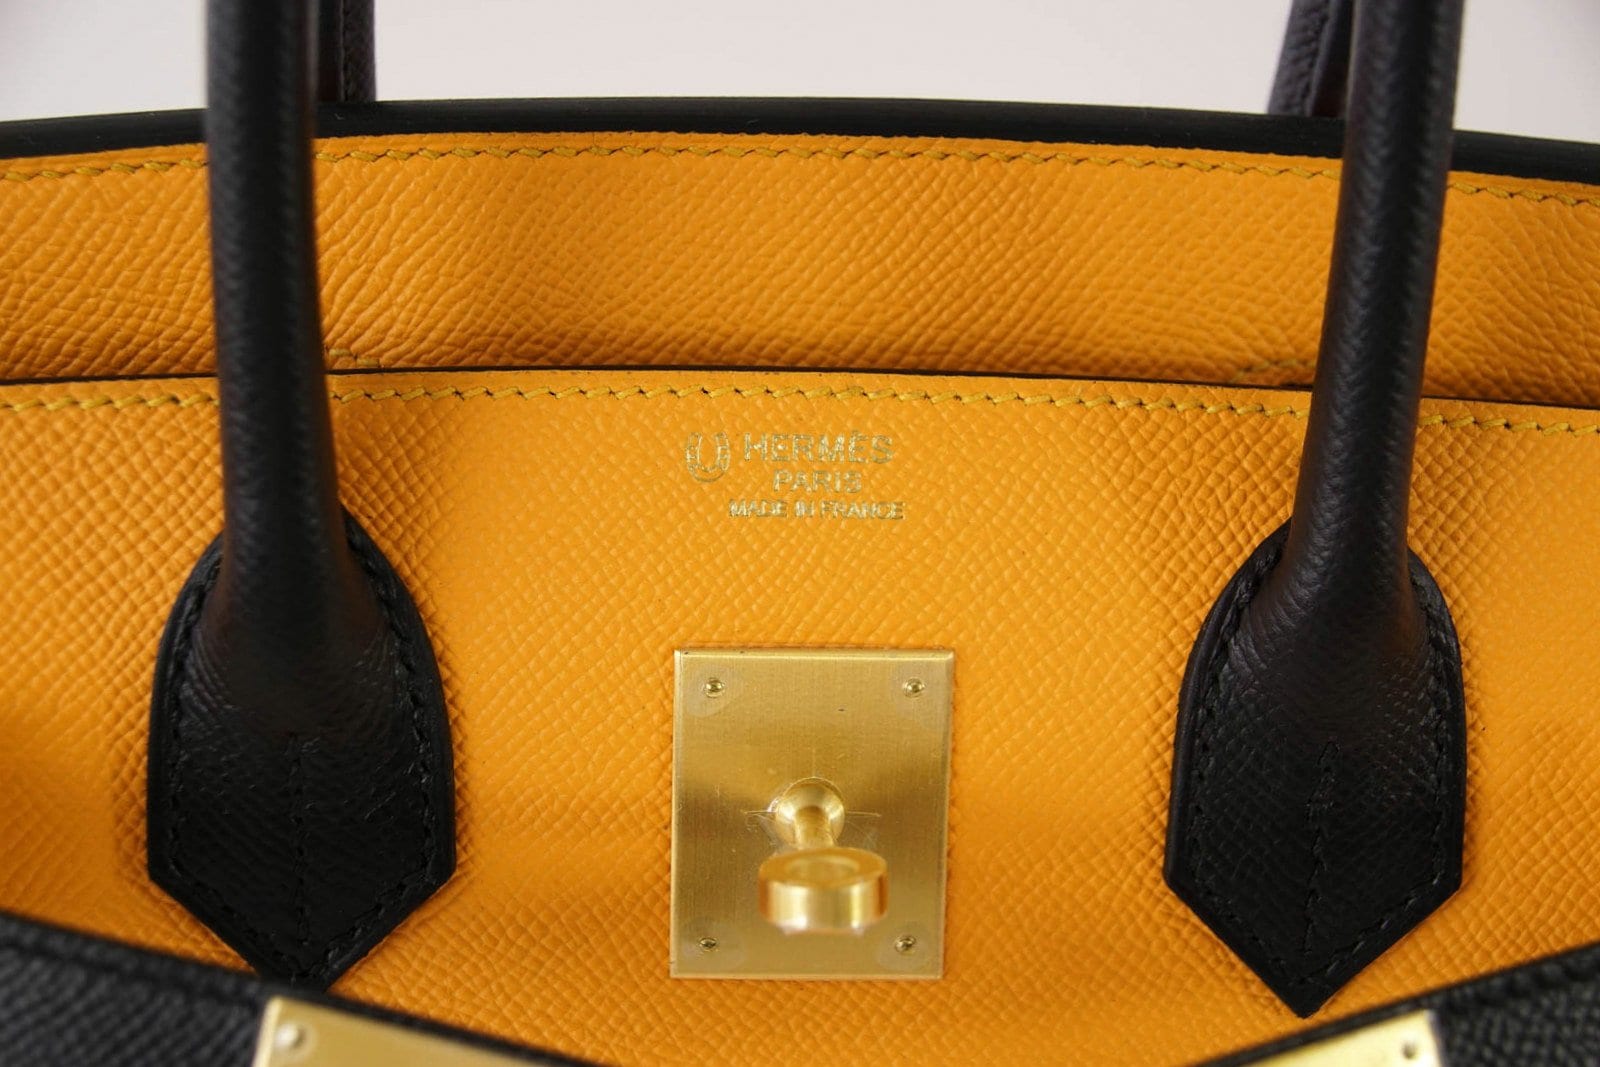 Hermes Birkin Sellier Bag Bicolor Epsom with Brushed Gold Hardware